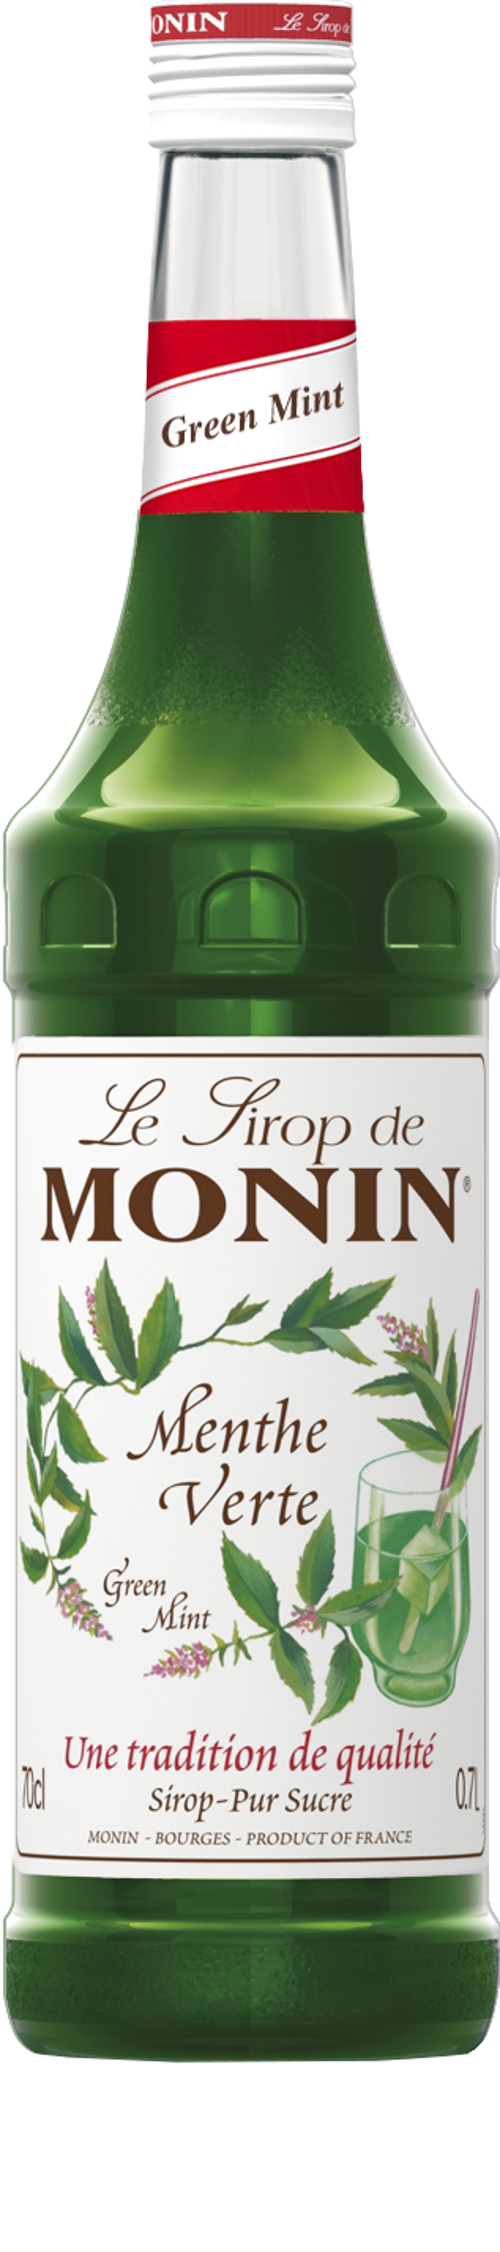 Le Sirop de MONIN Green Mint 0.7l